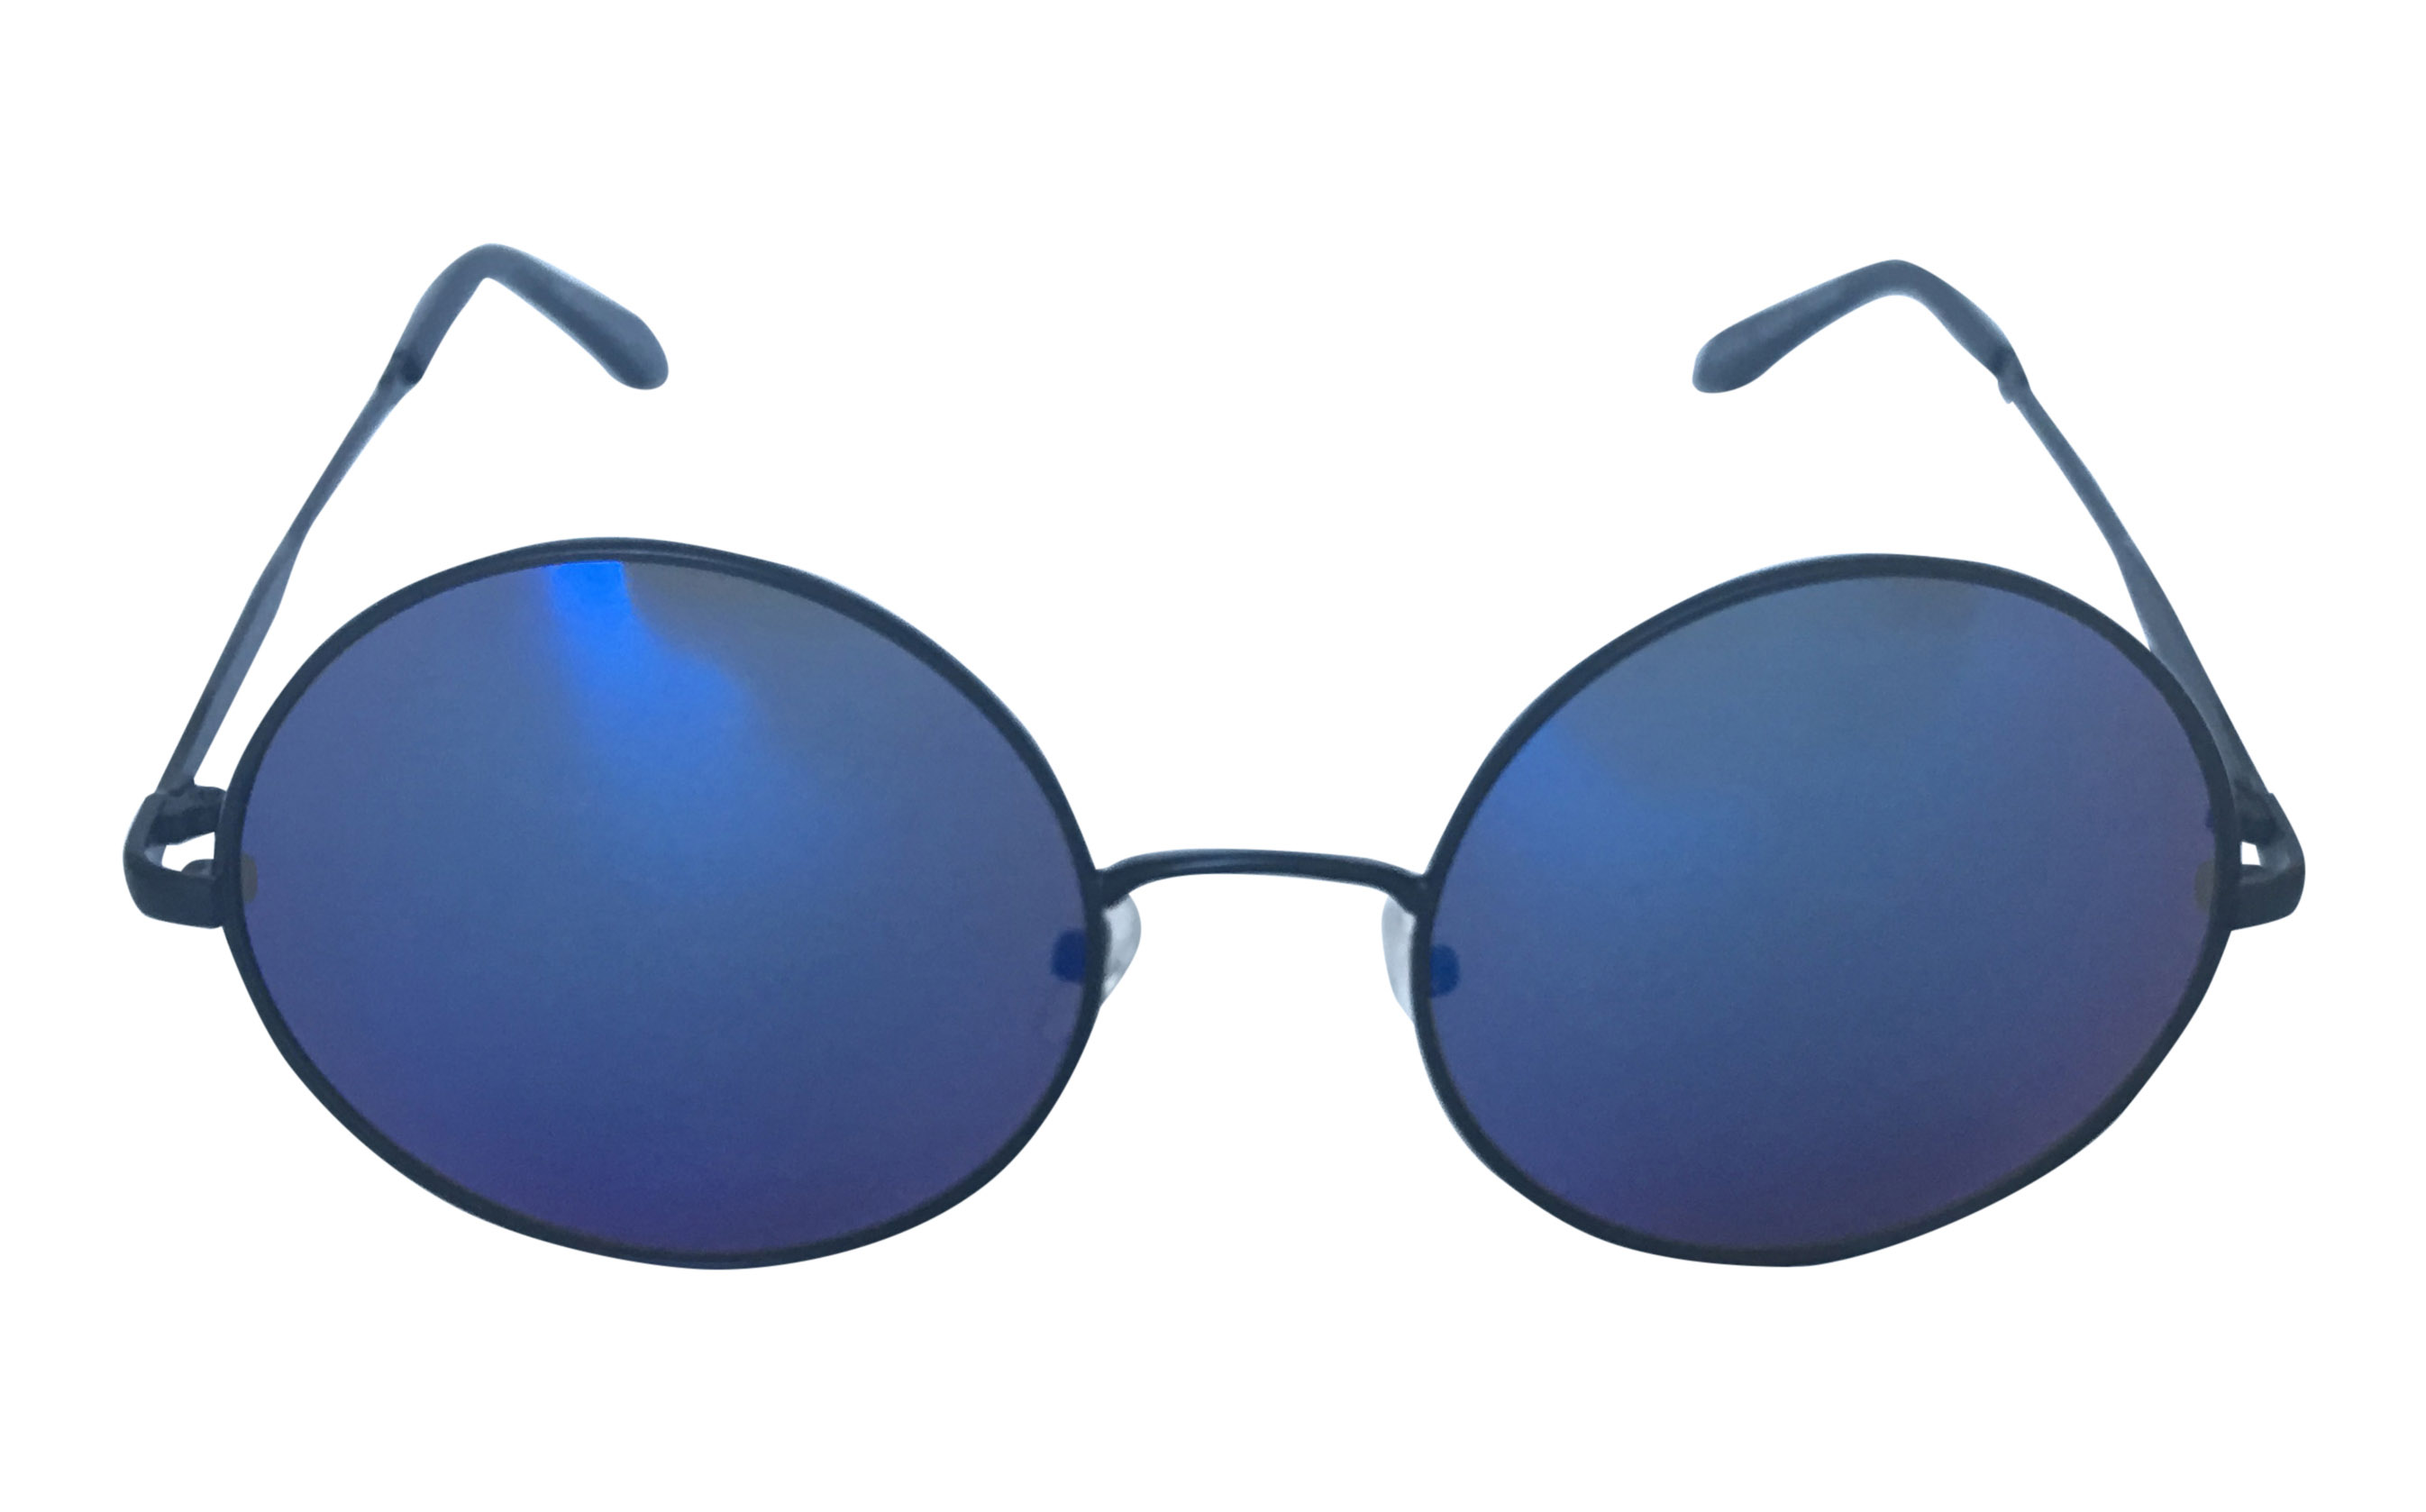 Sort rund metal solbrille med blålige spejlglas - Design nr. 3300